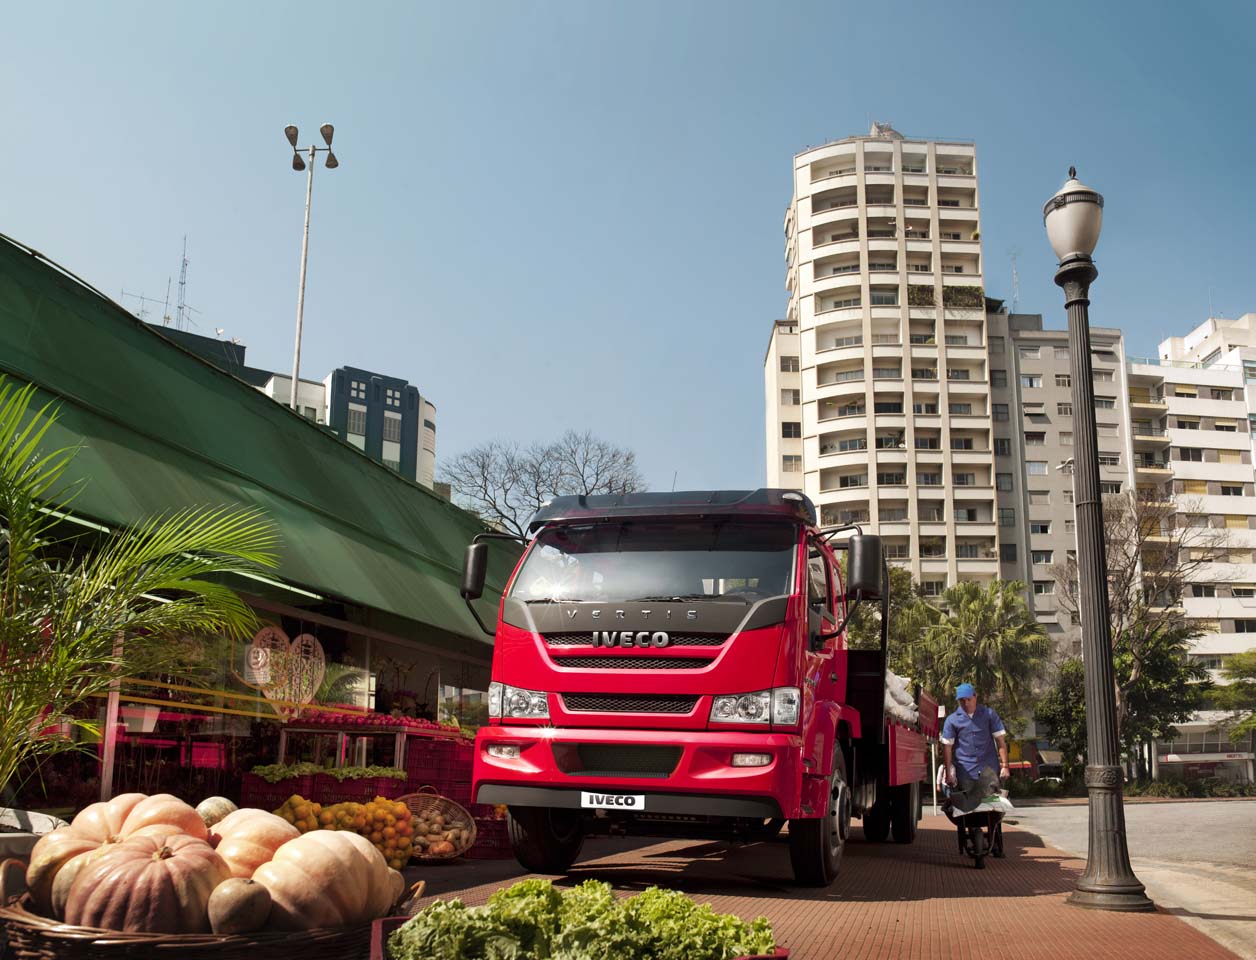 La gama Iveco Vertis es un camión ligero desarrollado específicamente para latinoamérica.